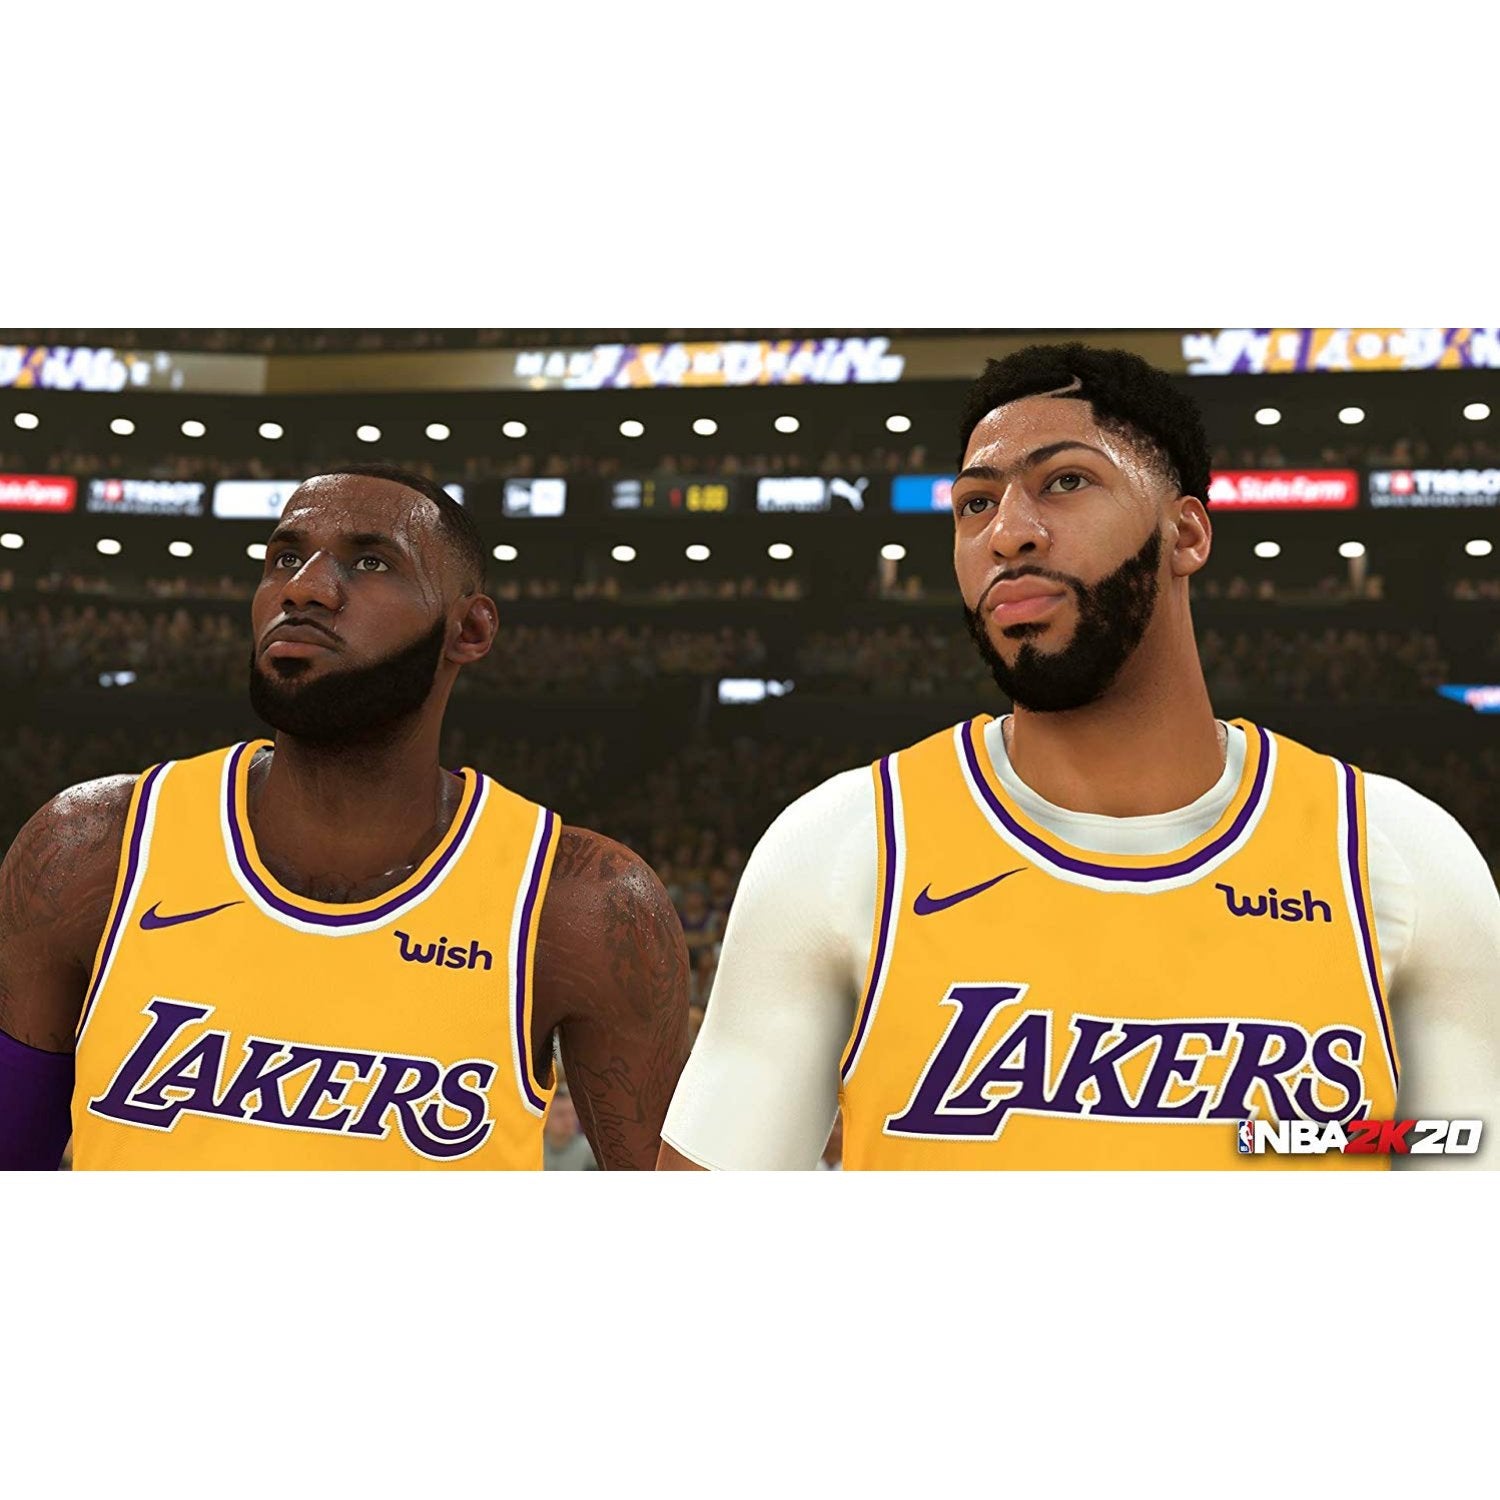 PS4 NBA 2K20